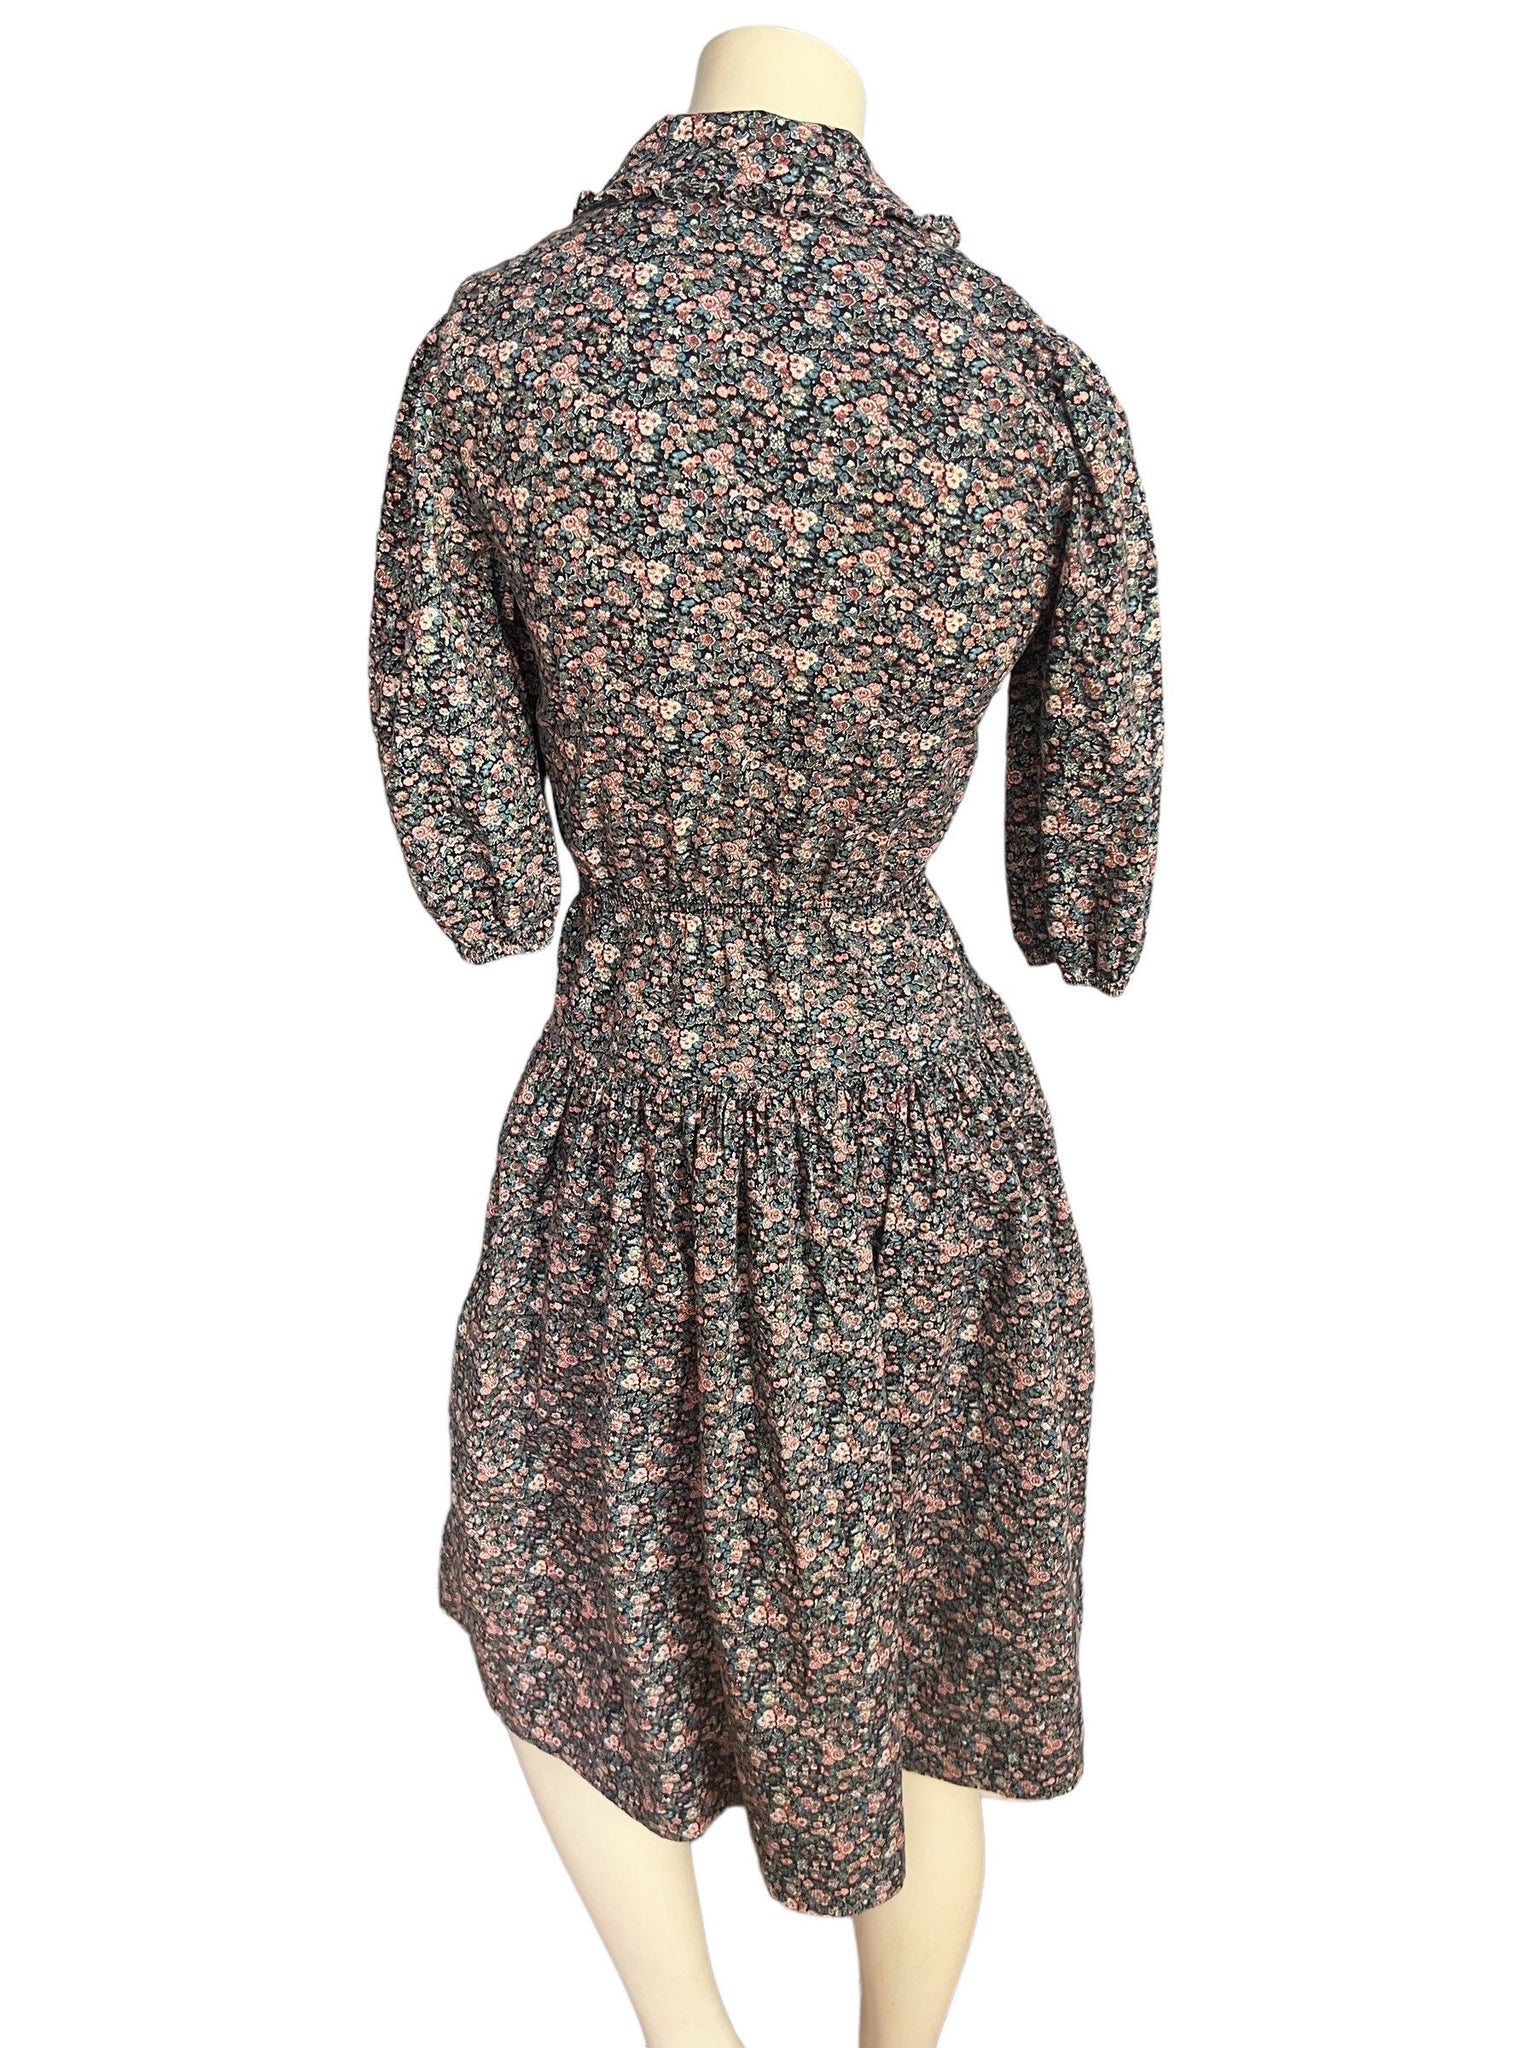 Vintage 70's floral prairie dress S